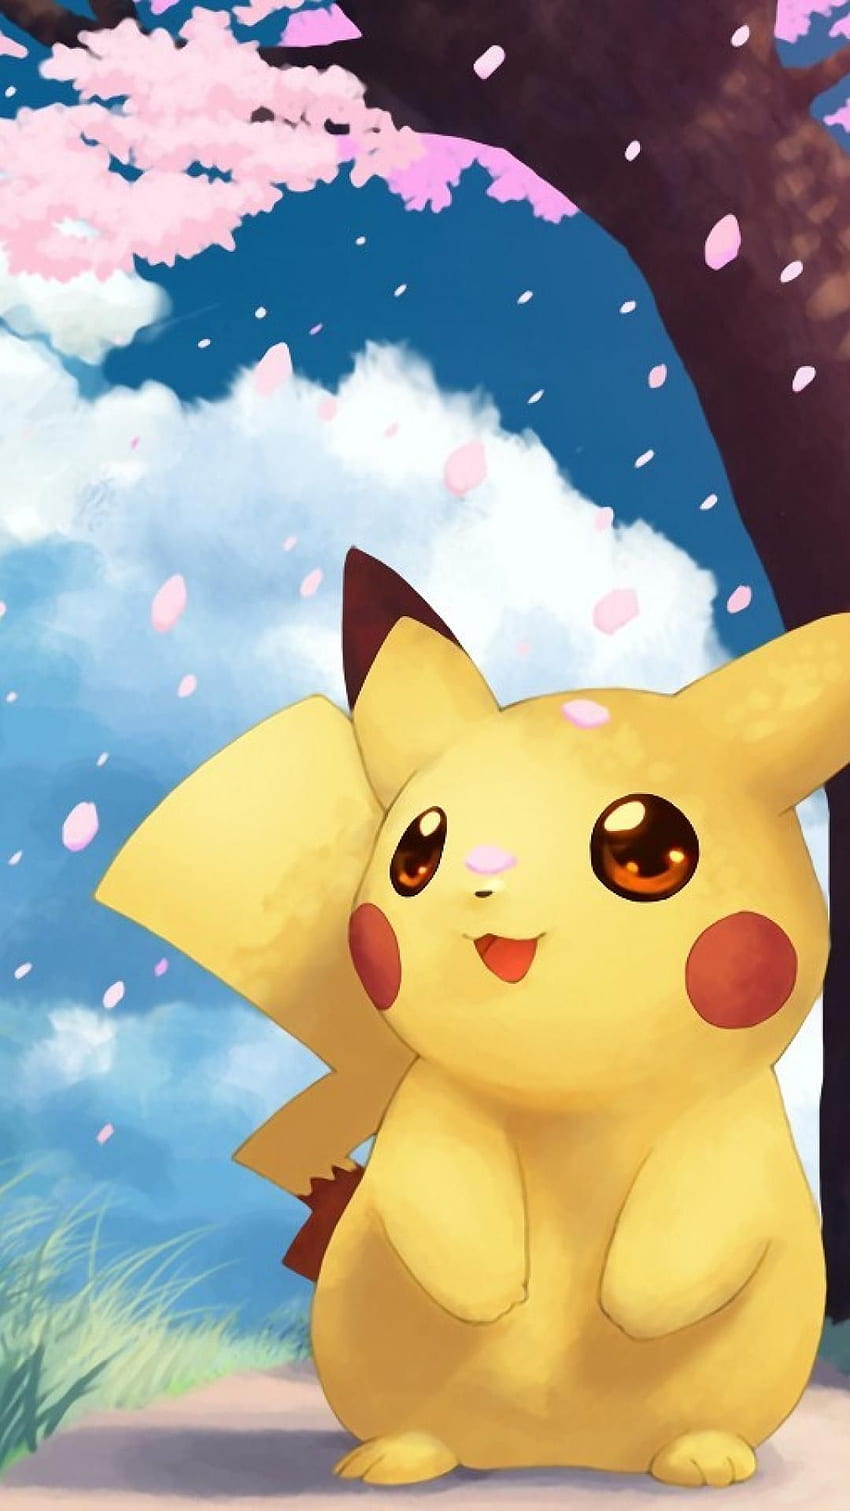 Hình nền Pokemon iPhone X HD sẽ mang đến cho bạn những kỷ niệm thời thơ ấu thú vị với các nhân vật yêu thích. Hãy cùng chiêm ngưỡng hình ảnh đẹp mắt và lấy lại những ký ức tuyệt vời của bạn cùng Pikachu.